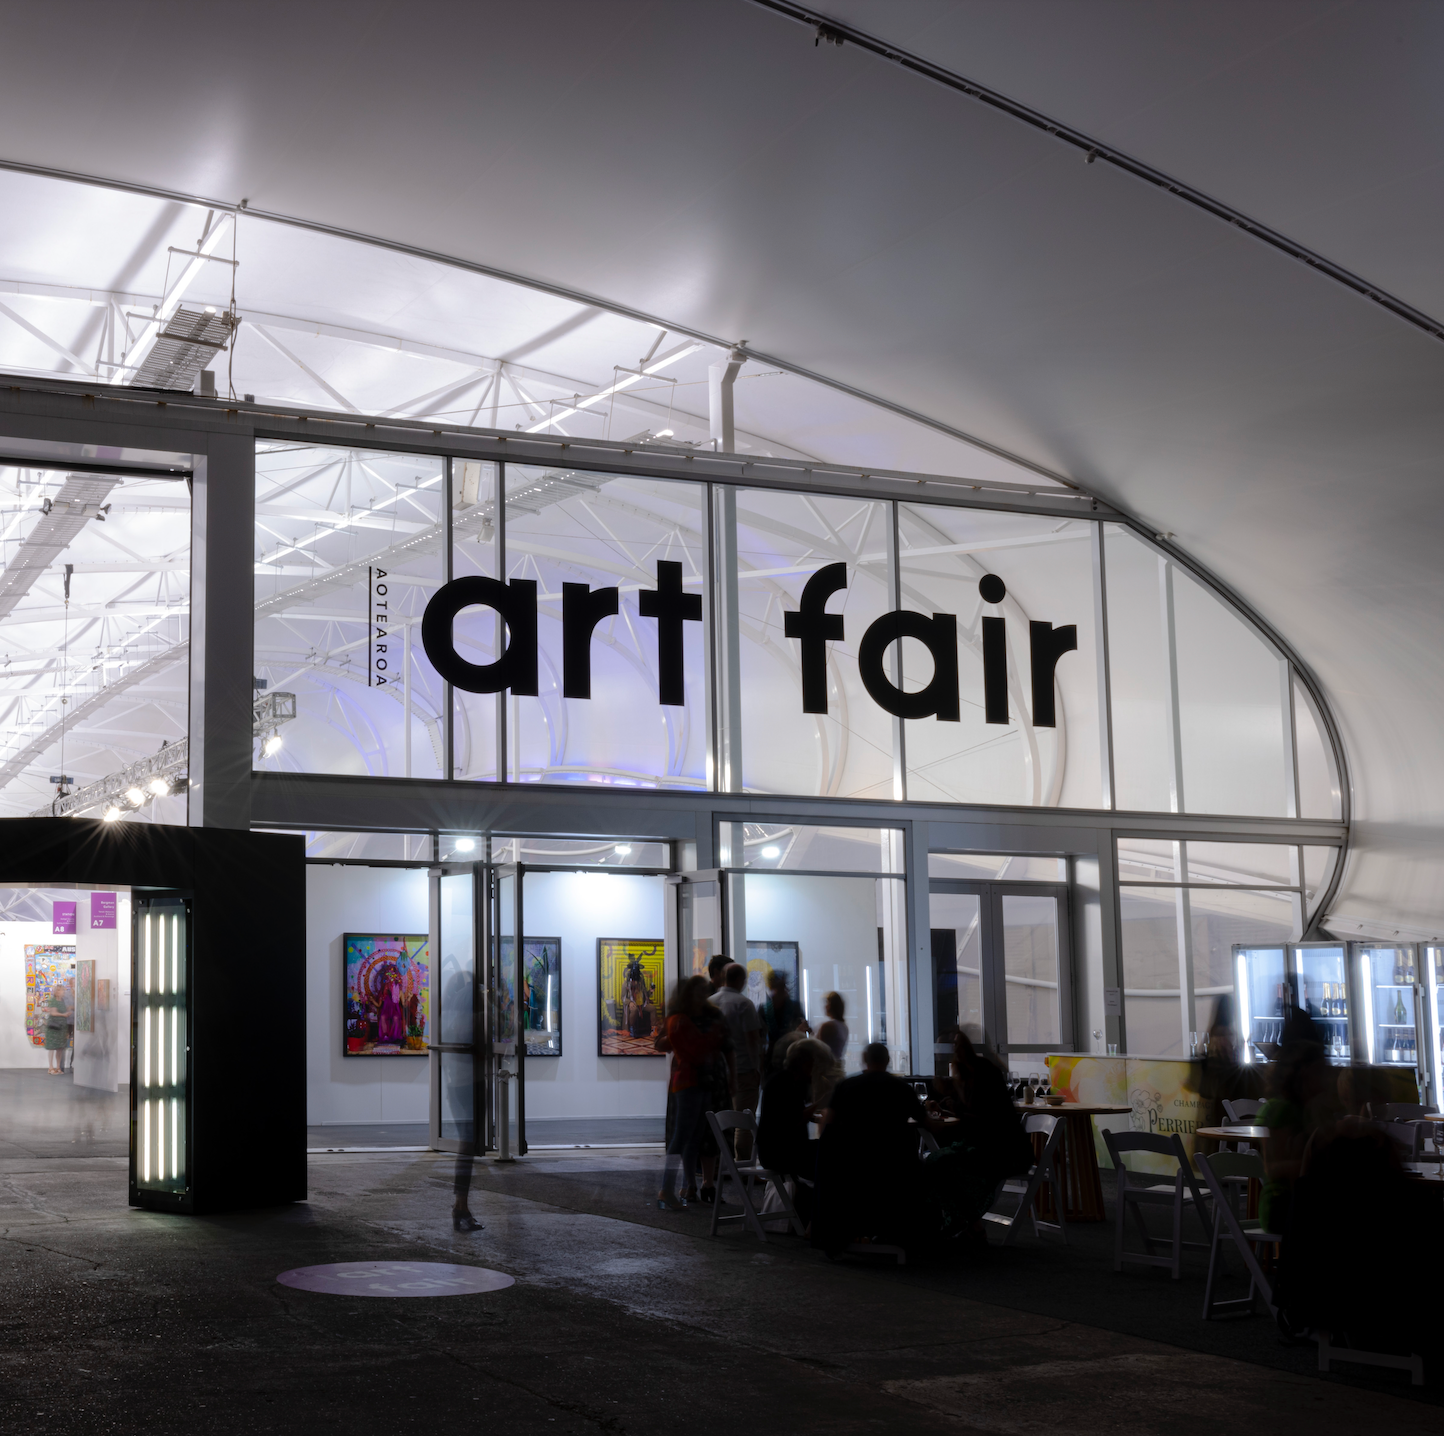 Aotearoa Art Fair 2023